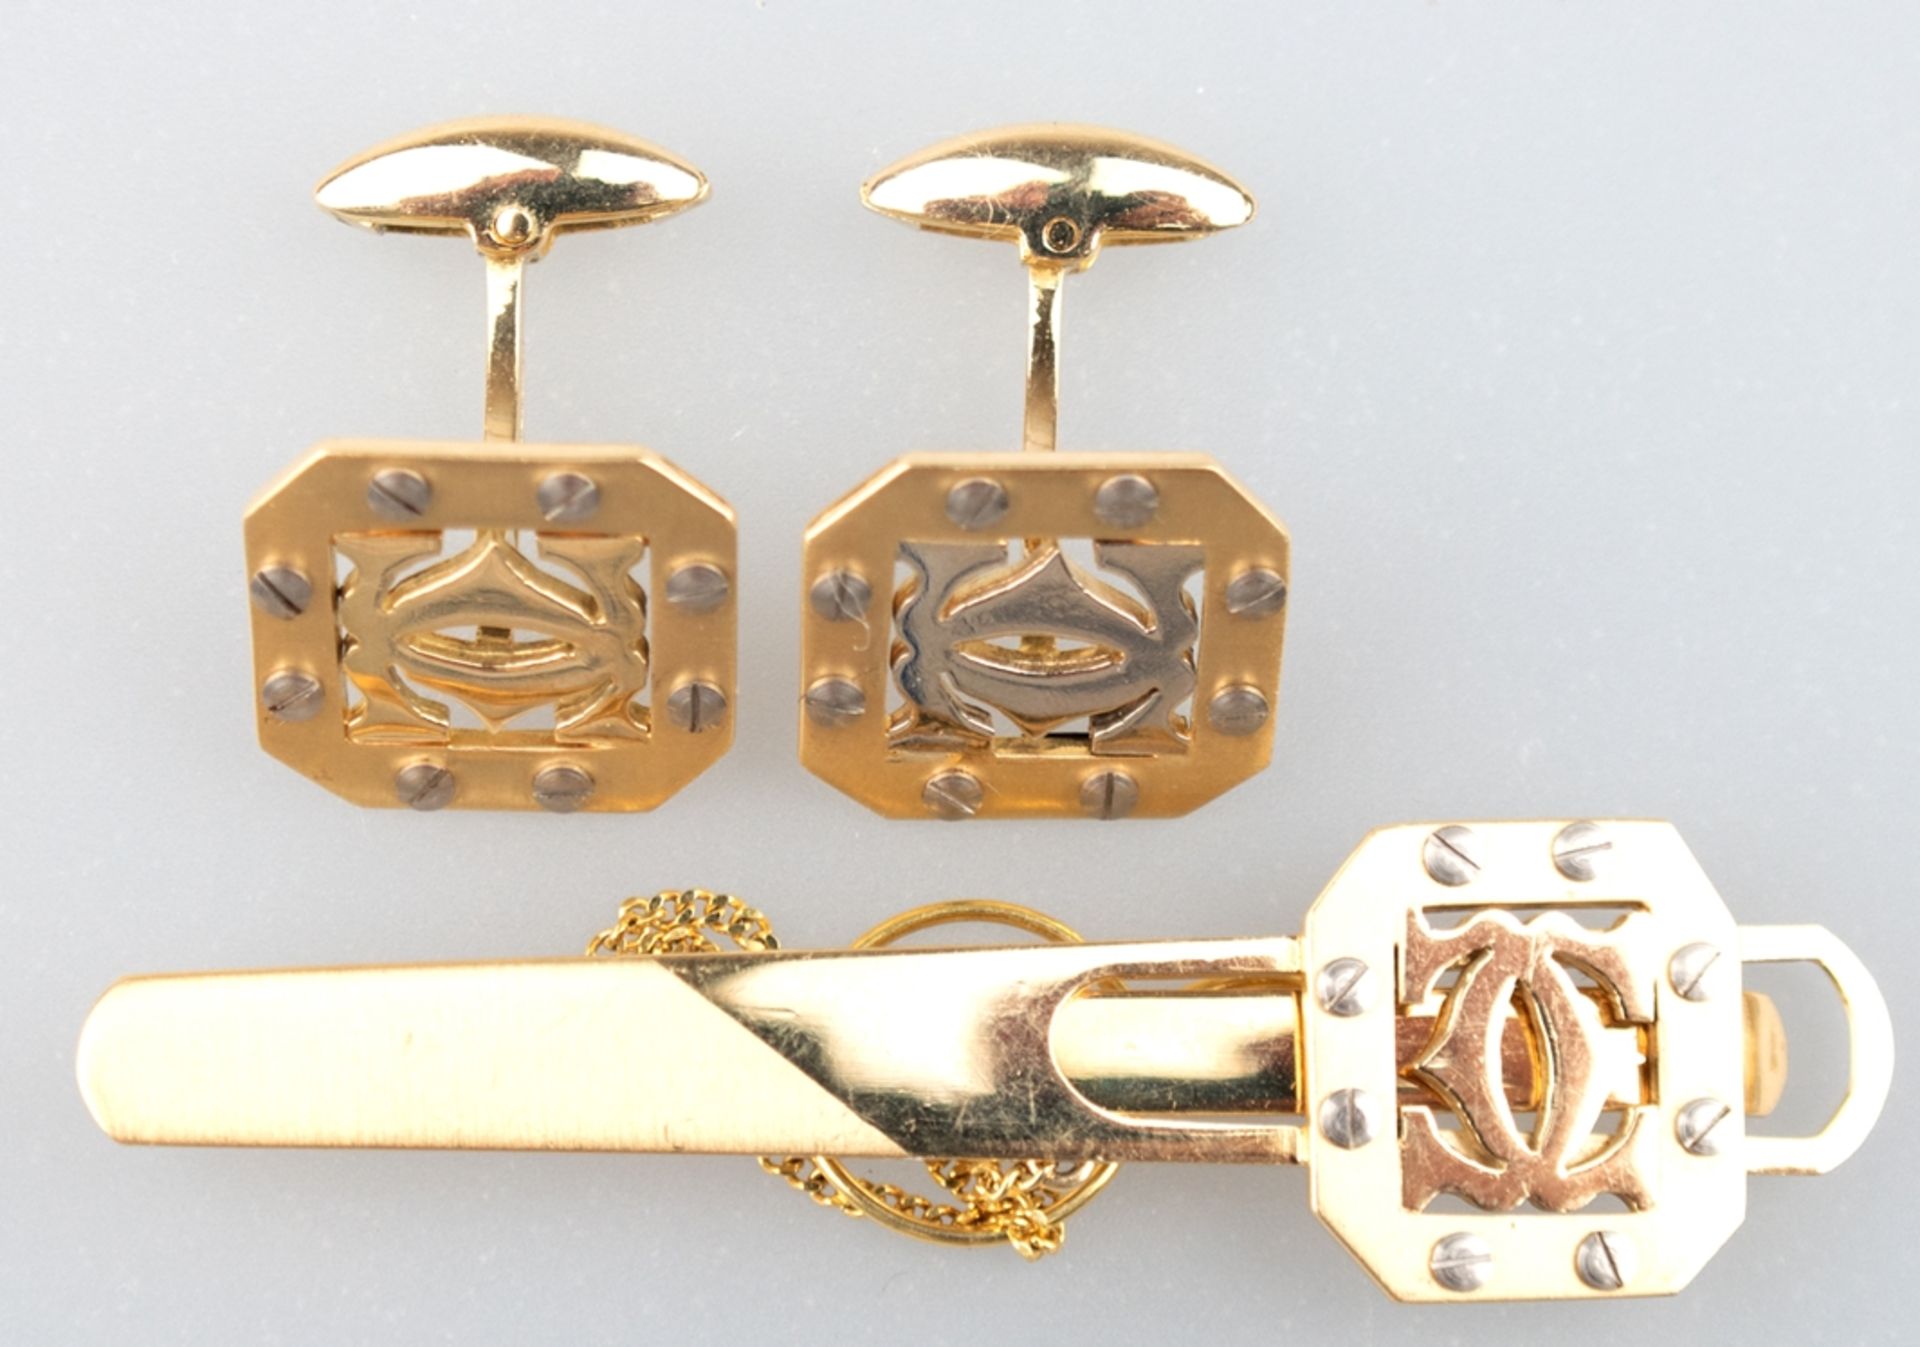 Cartier-Manschettenknöpfe und -Krawattenhalter, 585er GG/WG, achteckige durchbrochene Platten, Ran